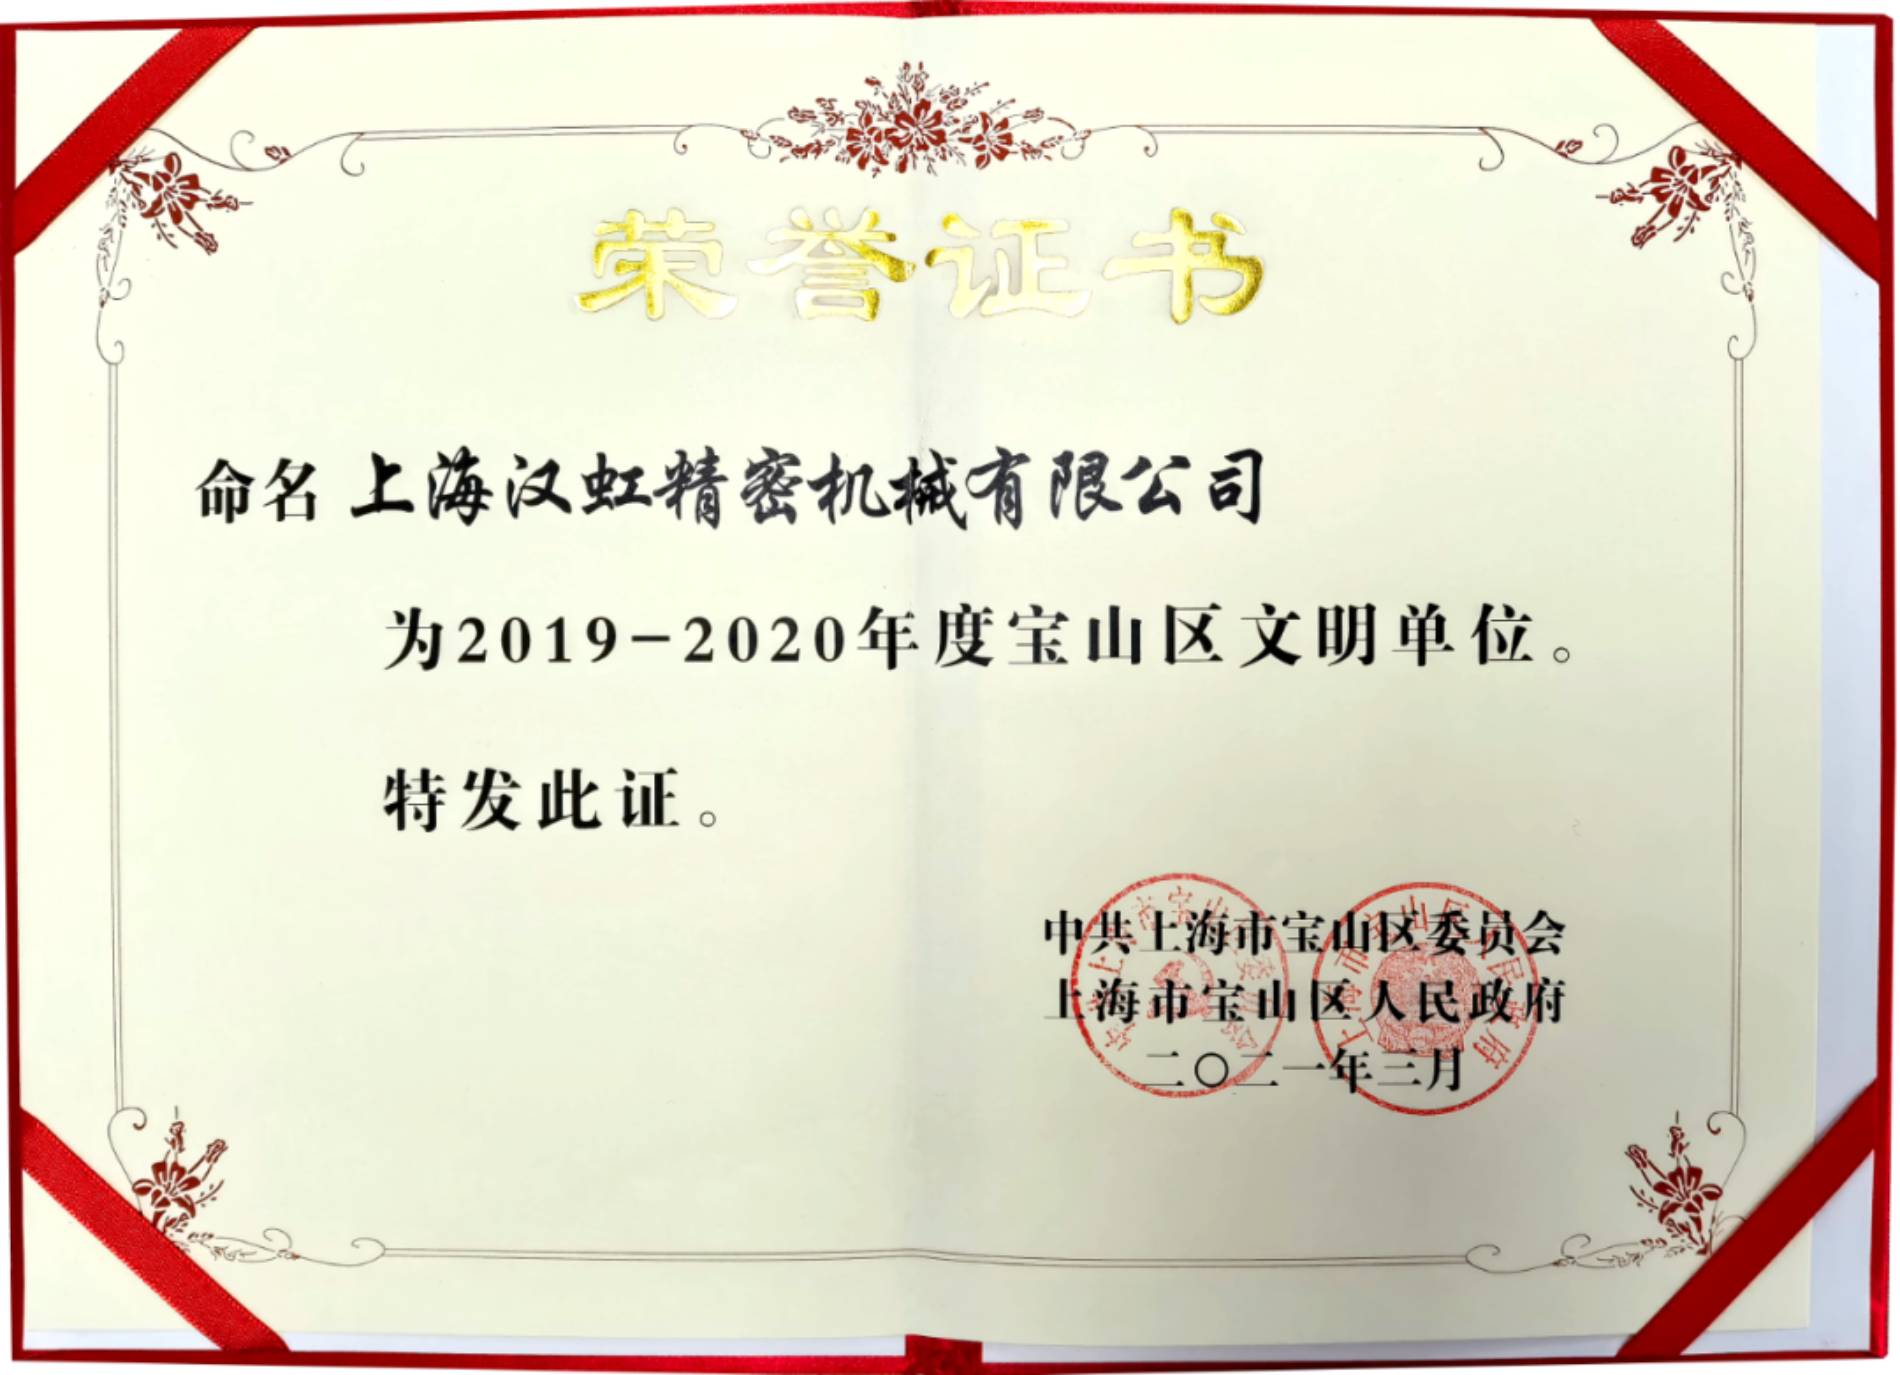 上海漢虹精密機械有限公司榮獲2019-2020年度寶山區文明單位